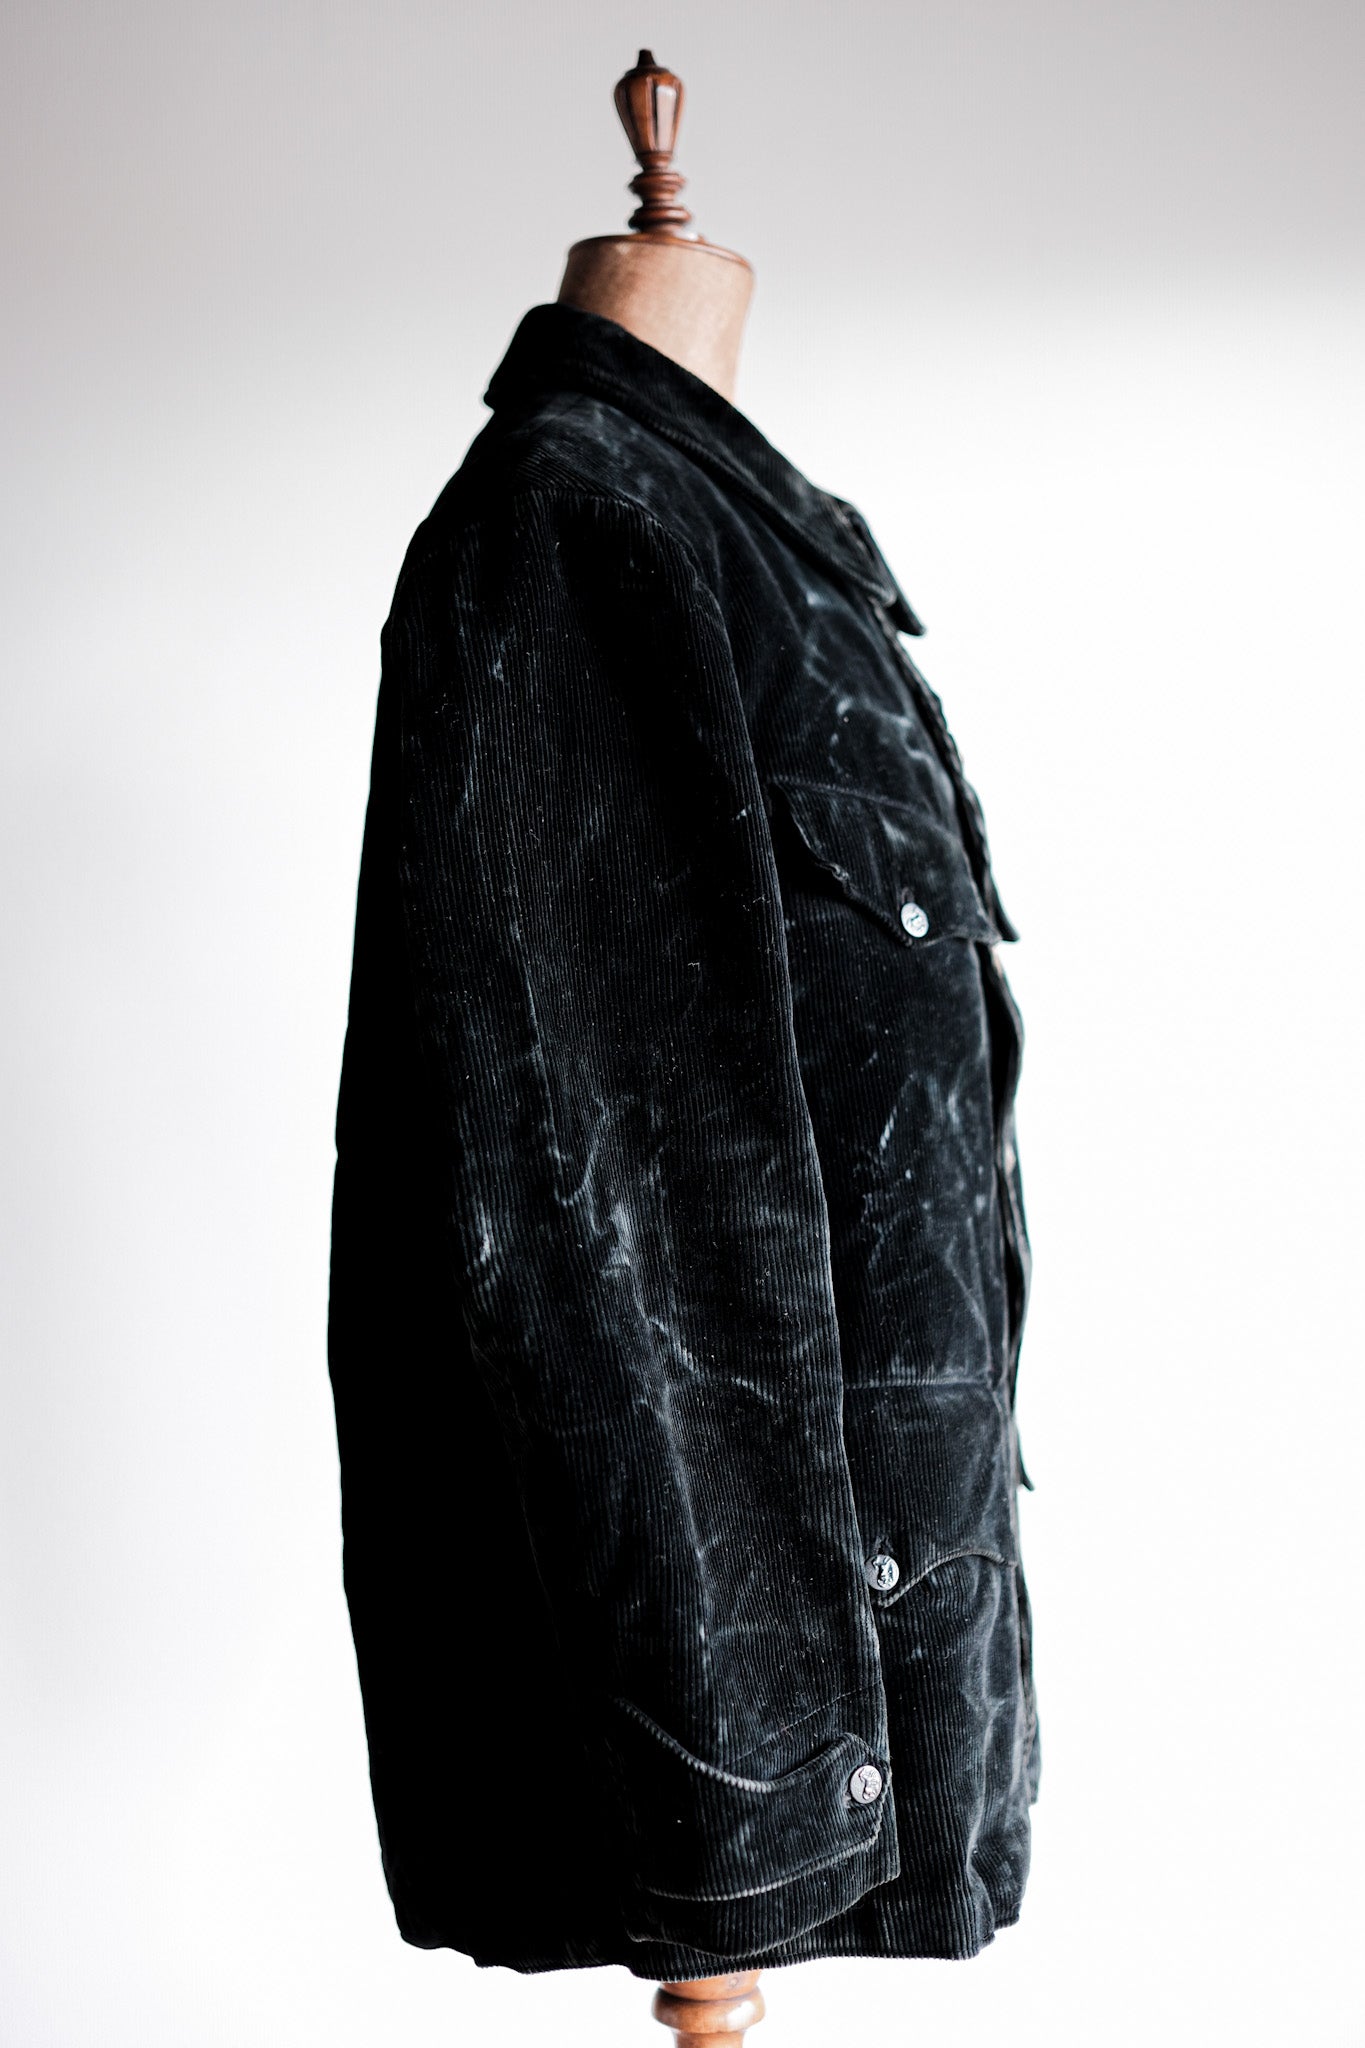 [~ 40 '] 프랑스 빈티지 블랙 코듀로이 사냥 재킷